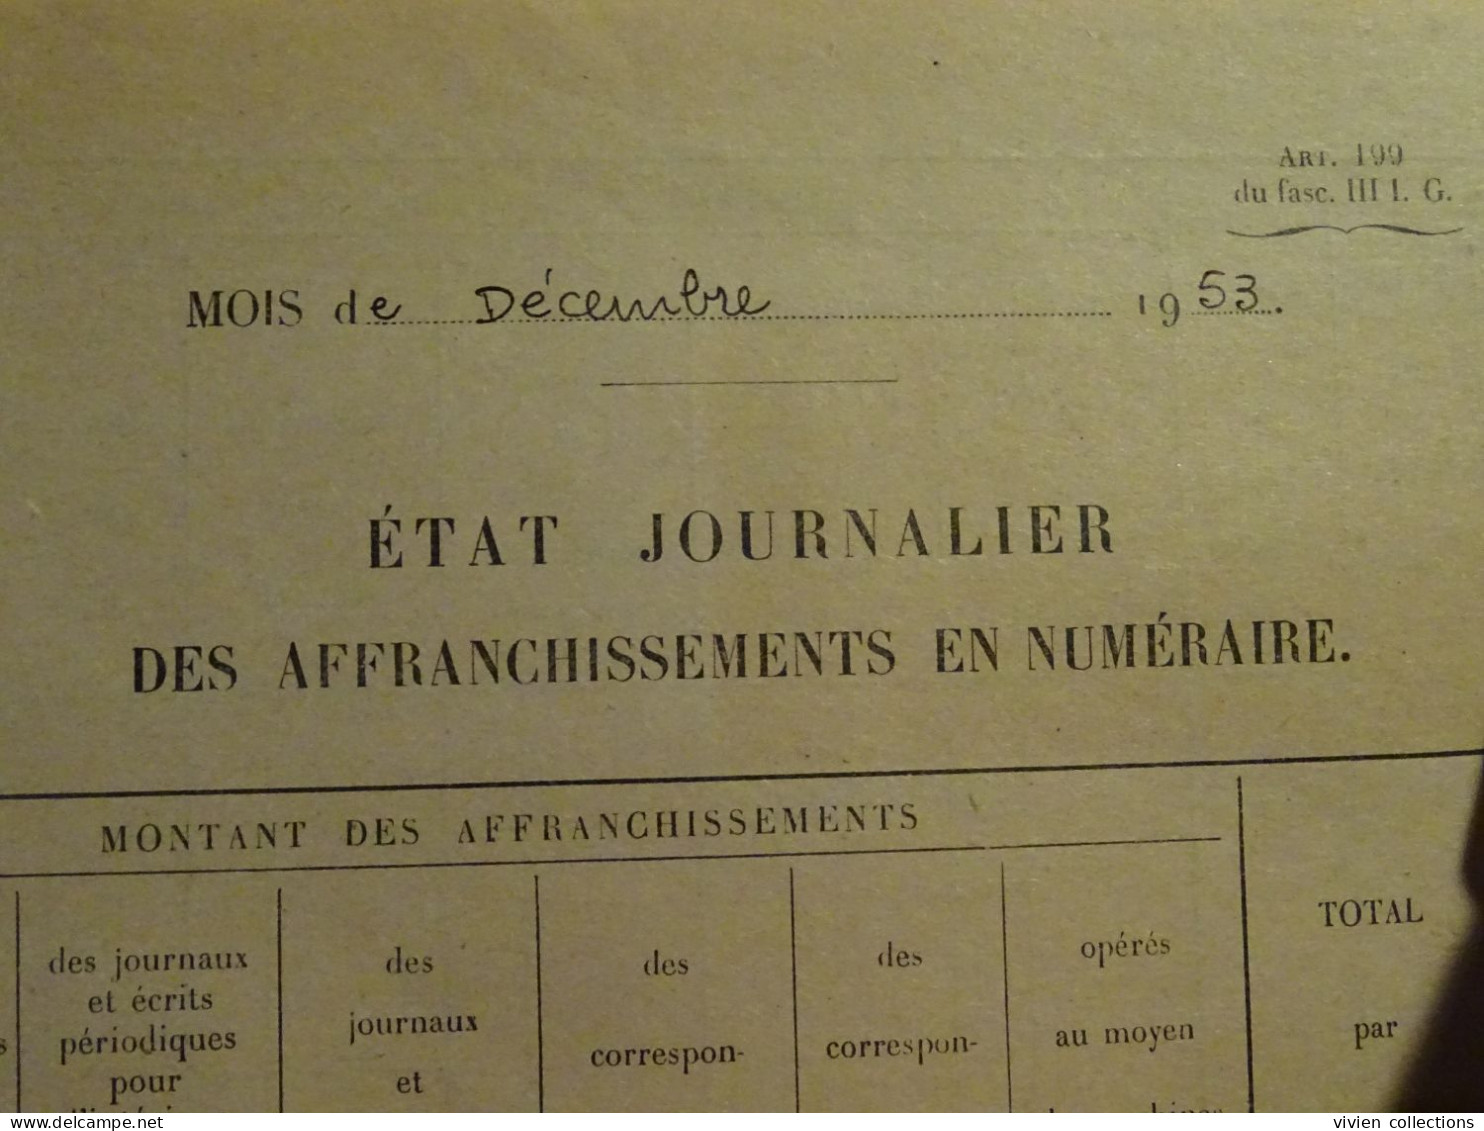 France cours pratique d'instruction Orléans 1953 La République du Centre journal quotidien / déclaration chèques postaux